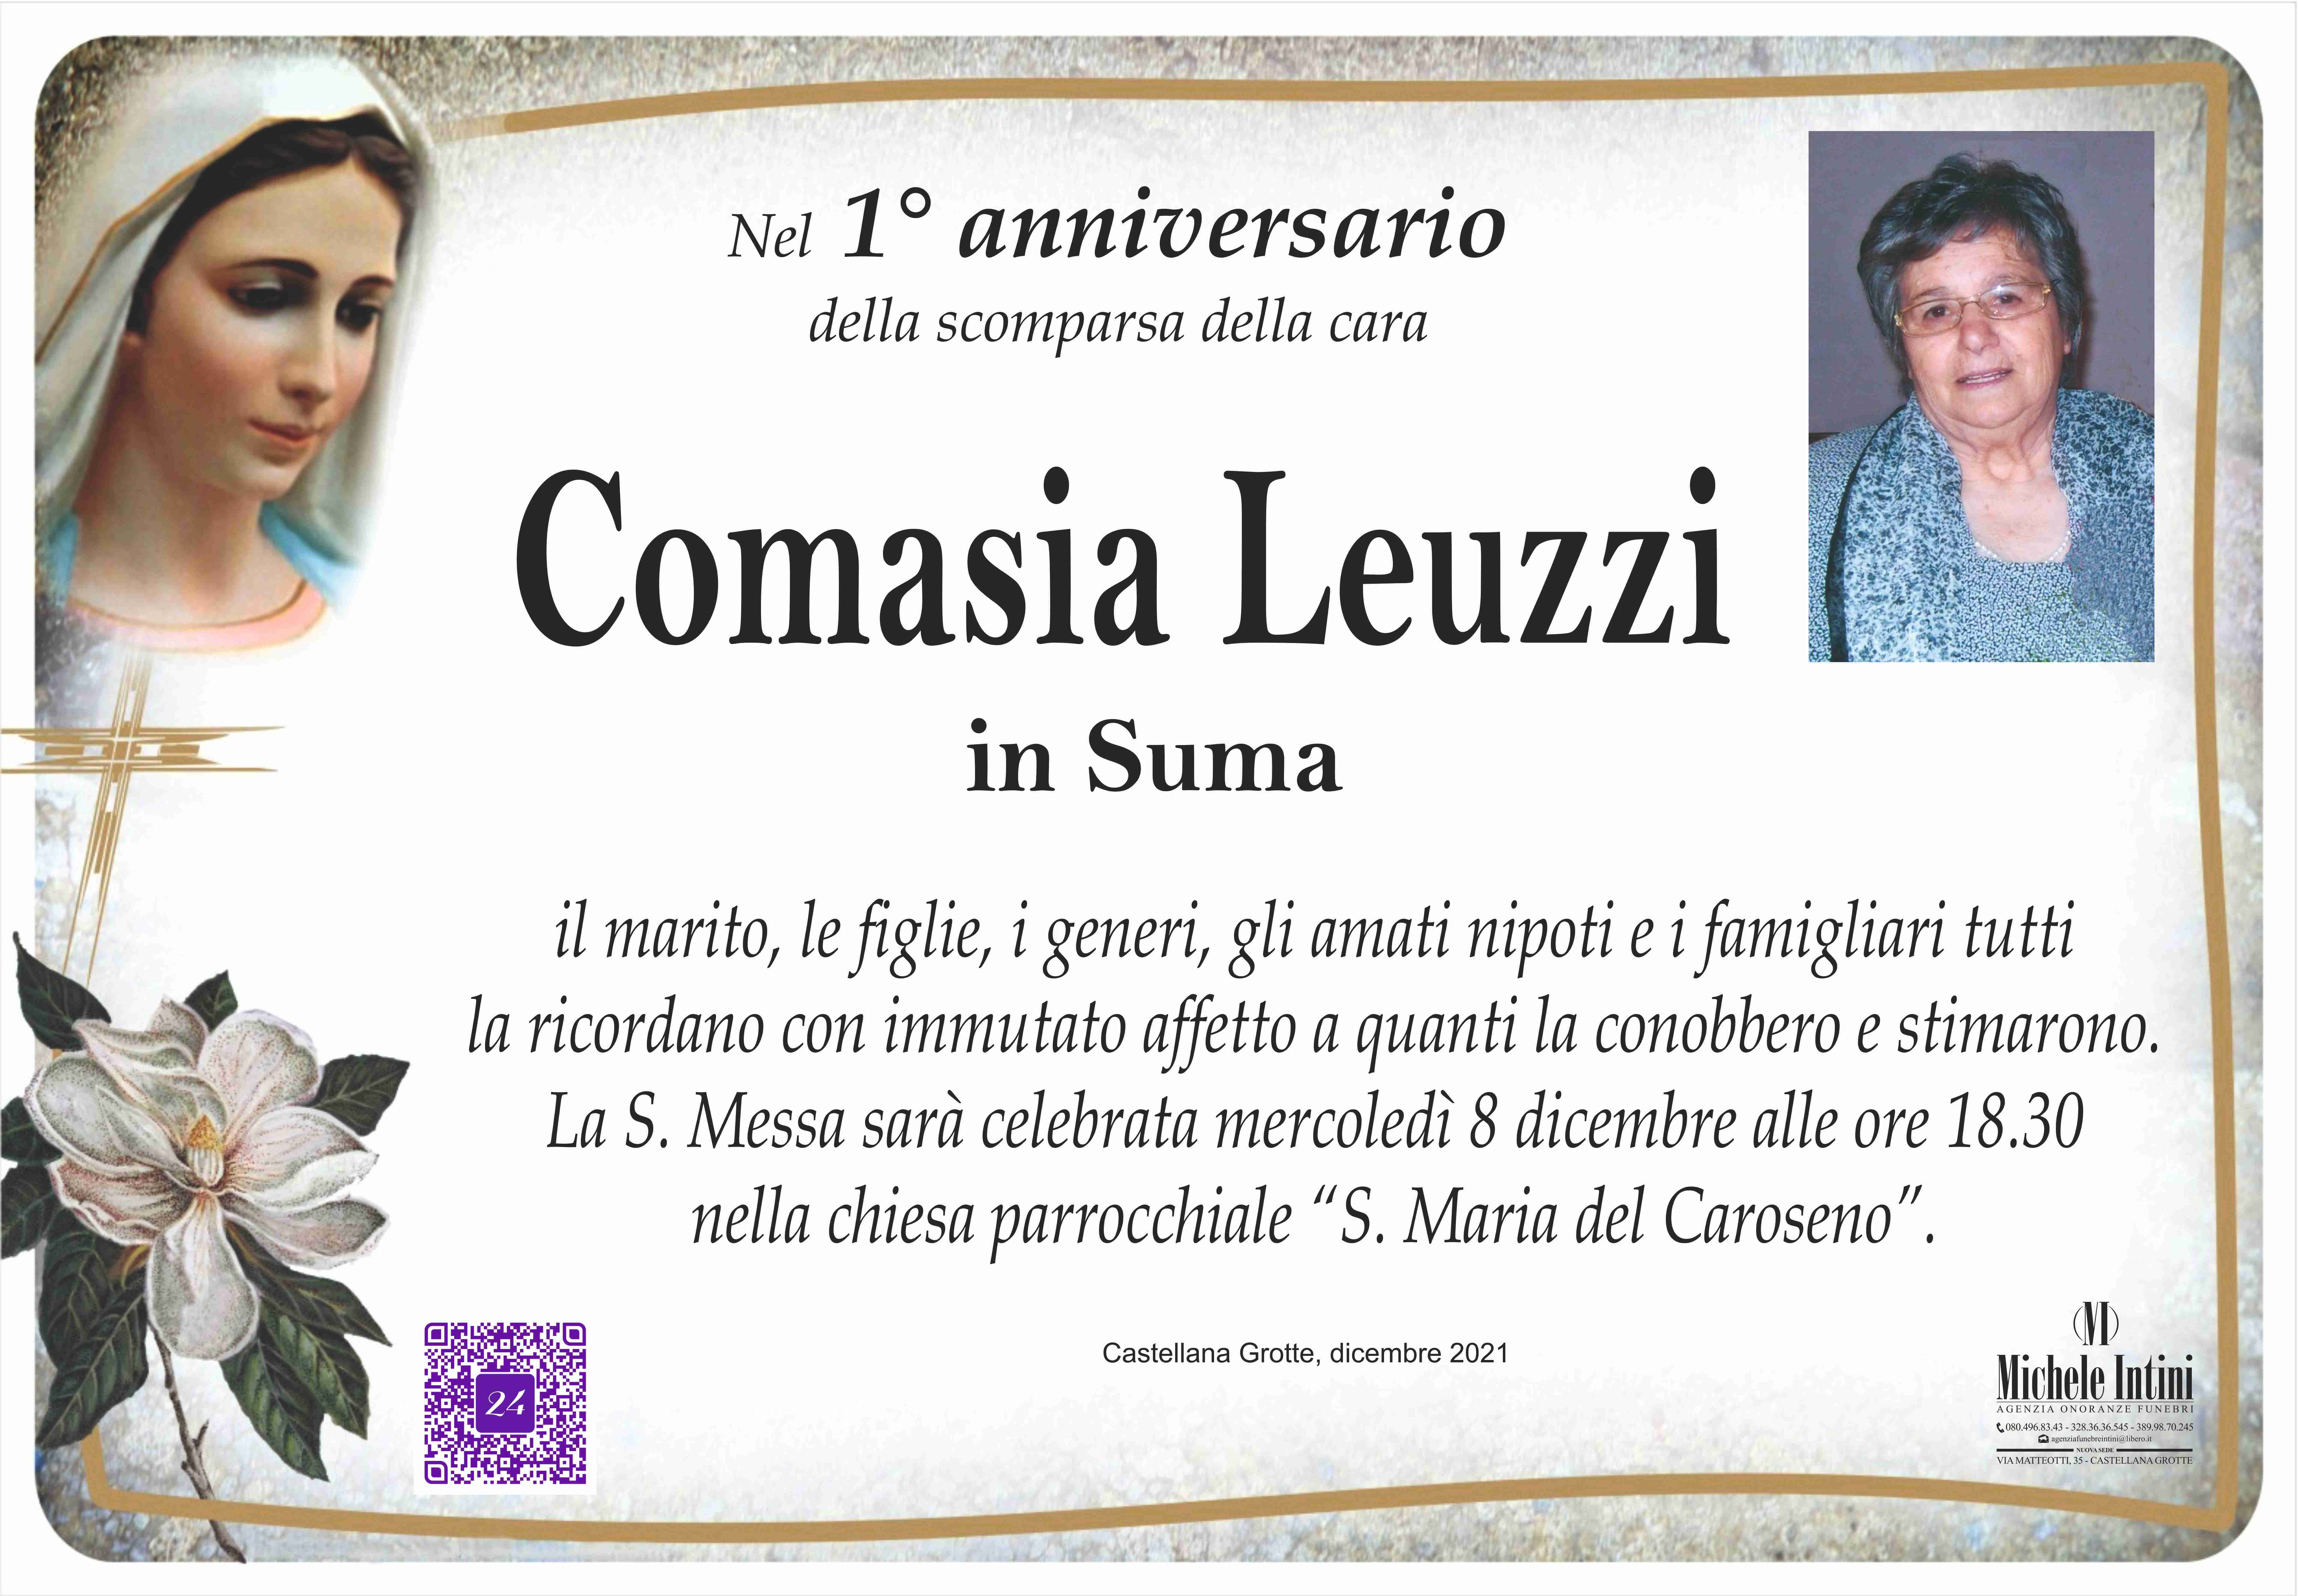 Comasia Leuzzi